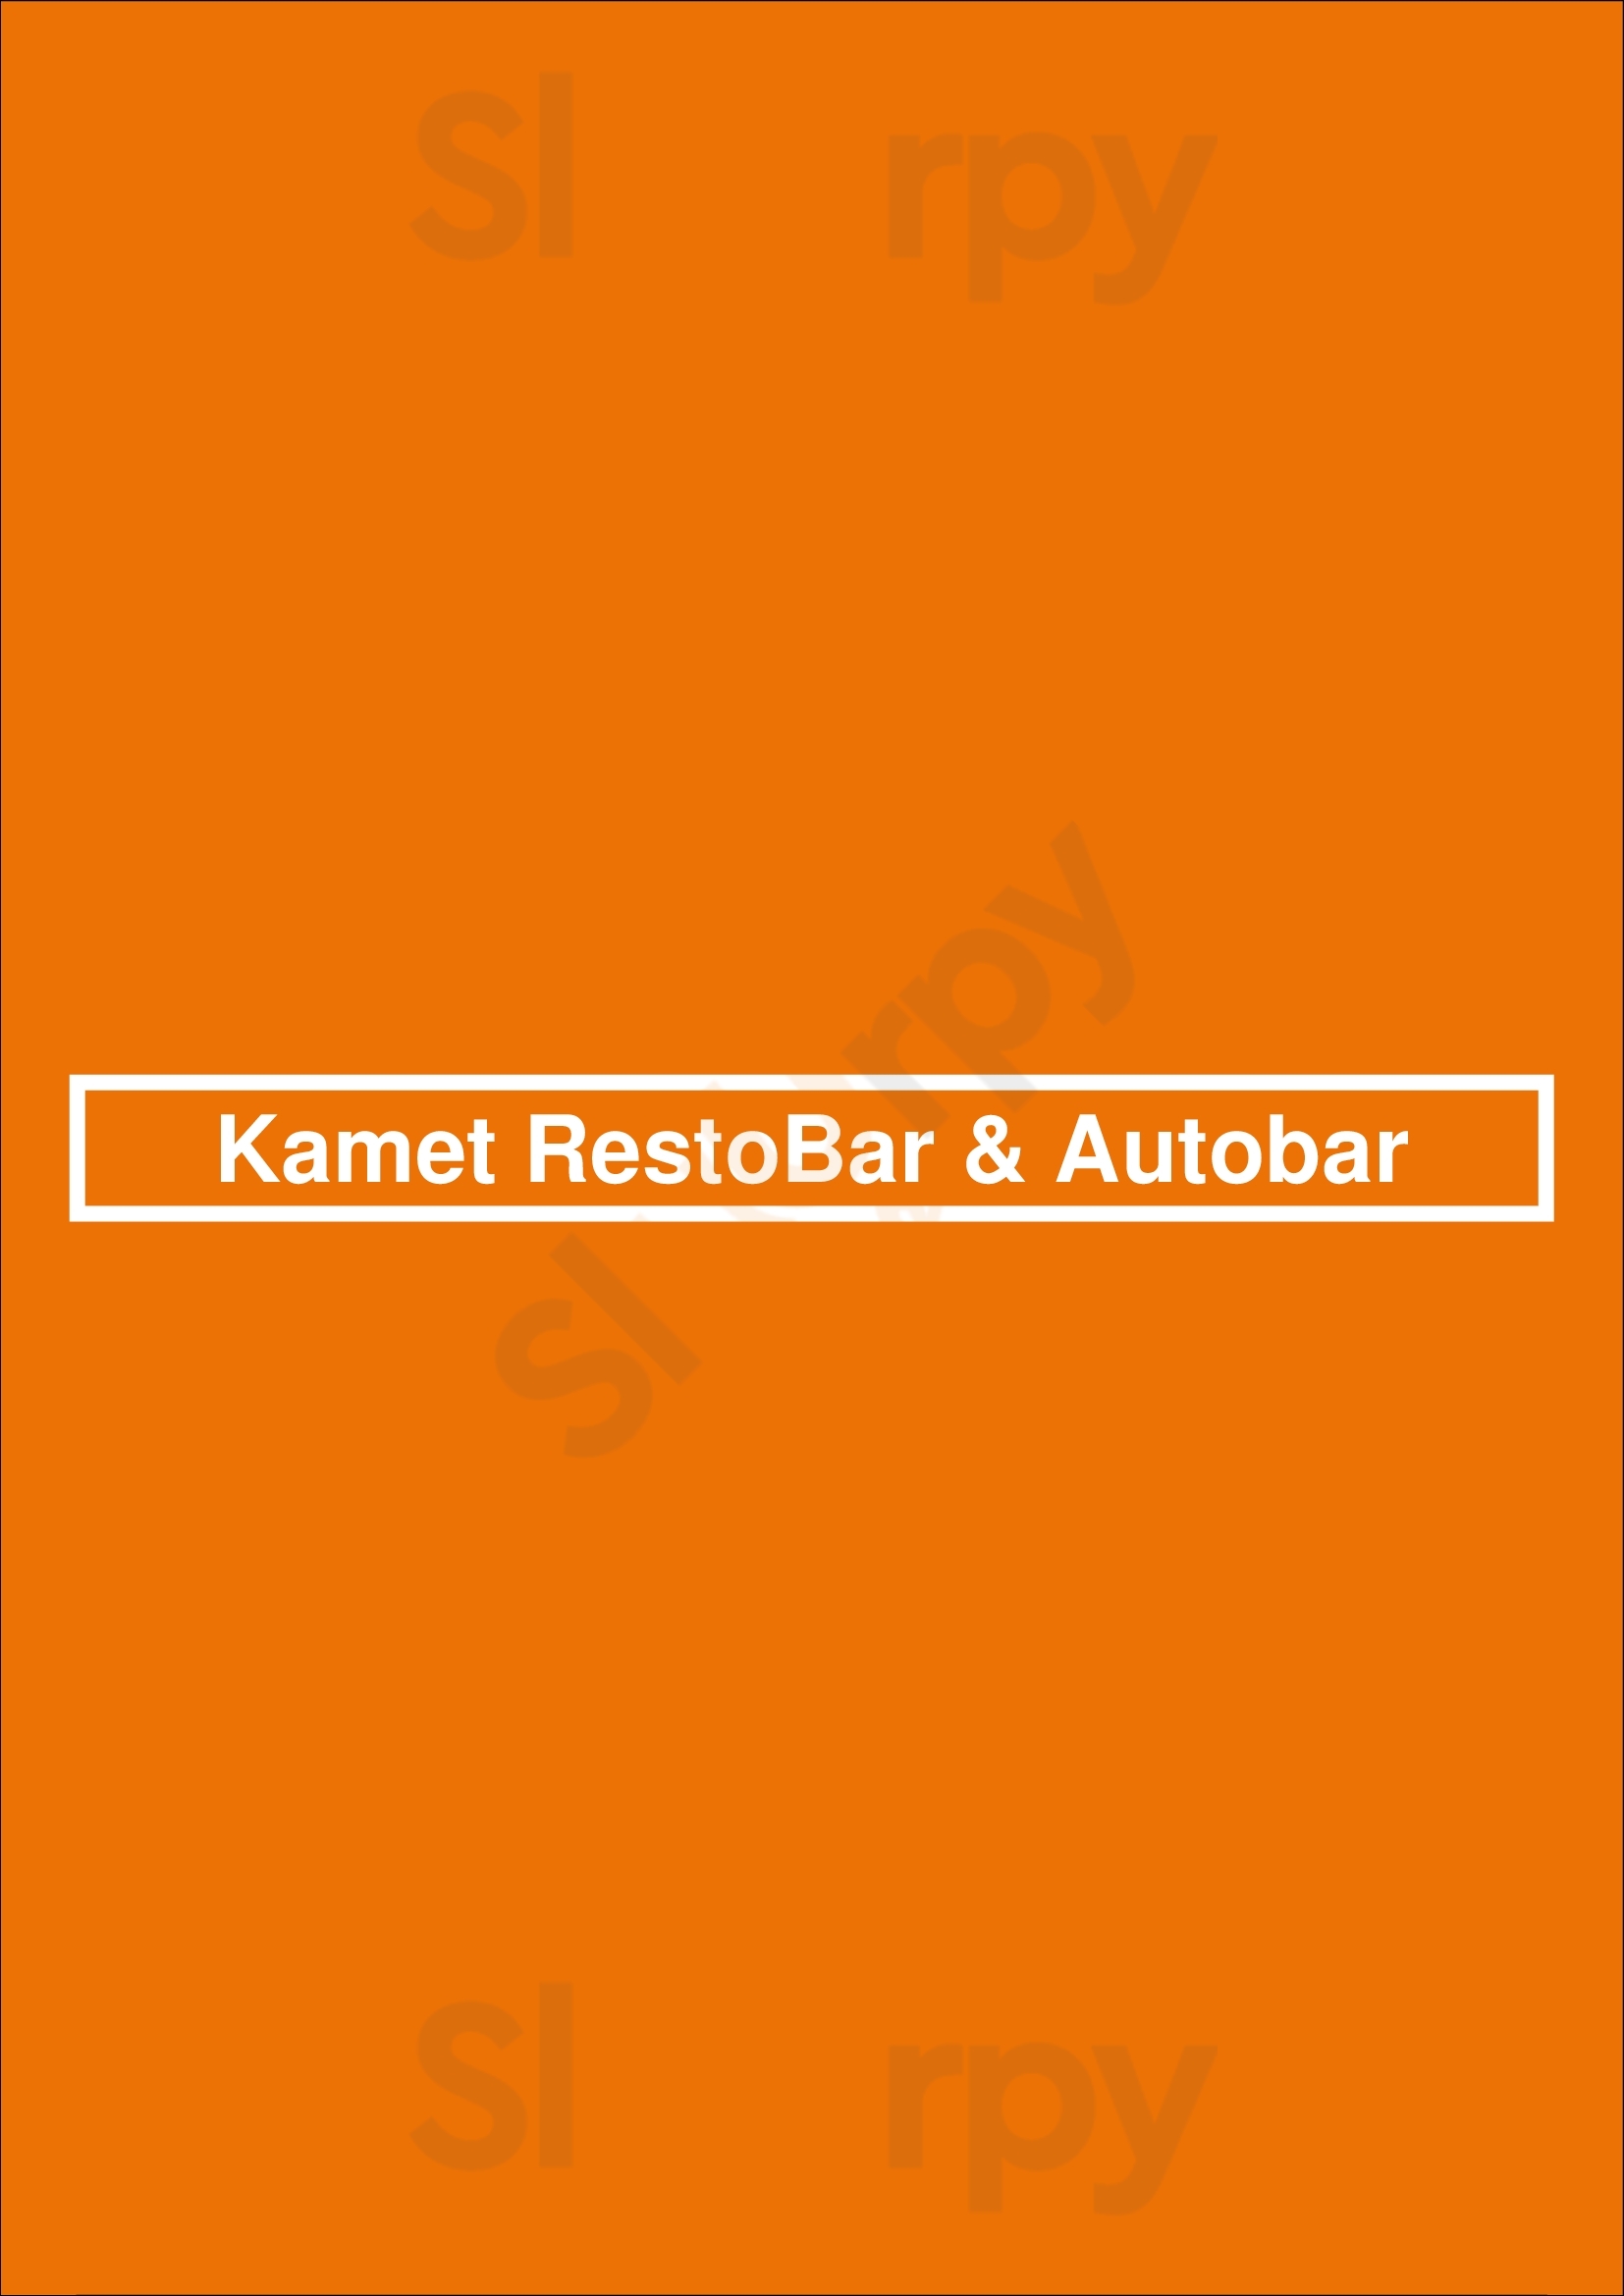 Kamet Restobar & Autobar Ituzaingó Menu - 1